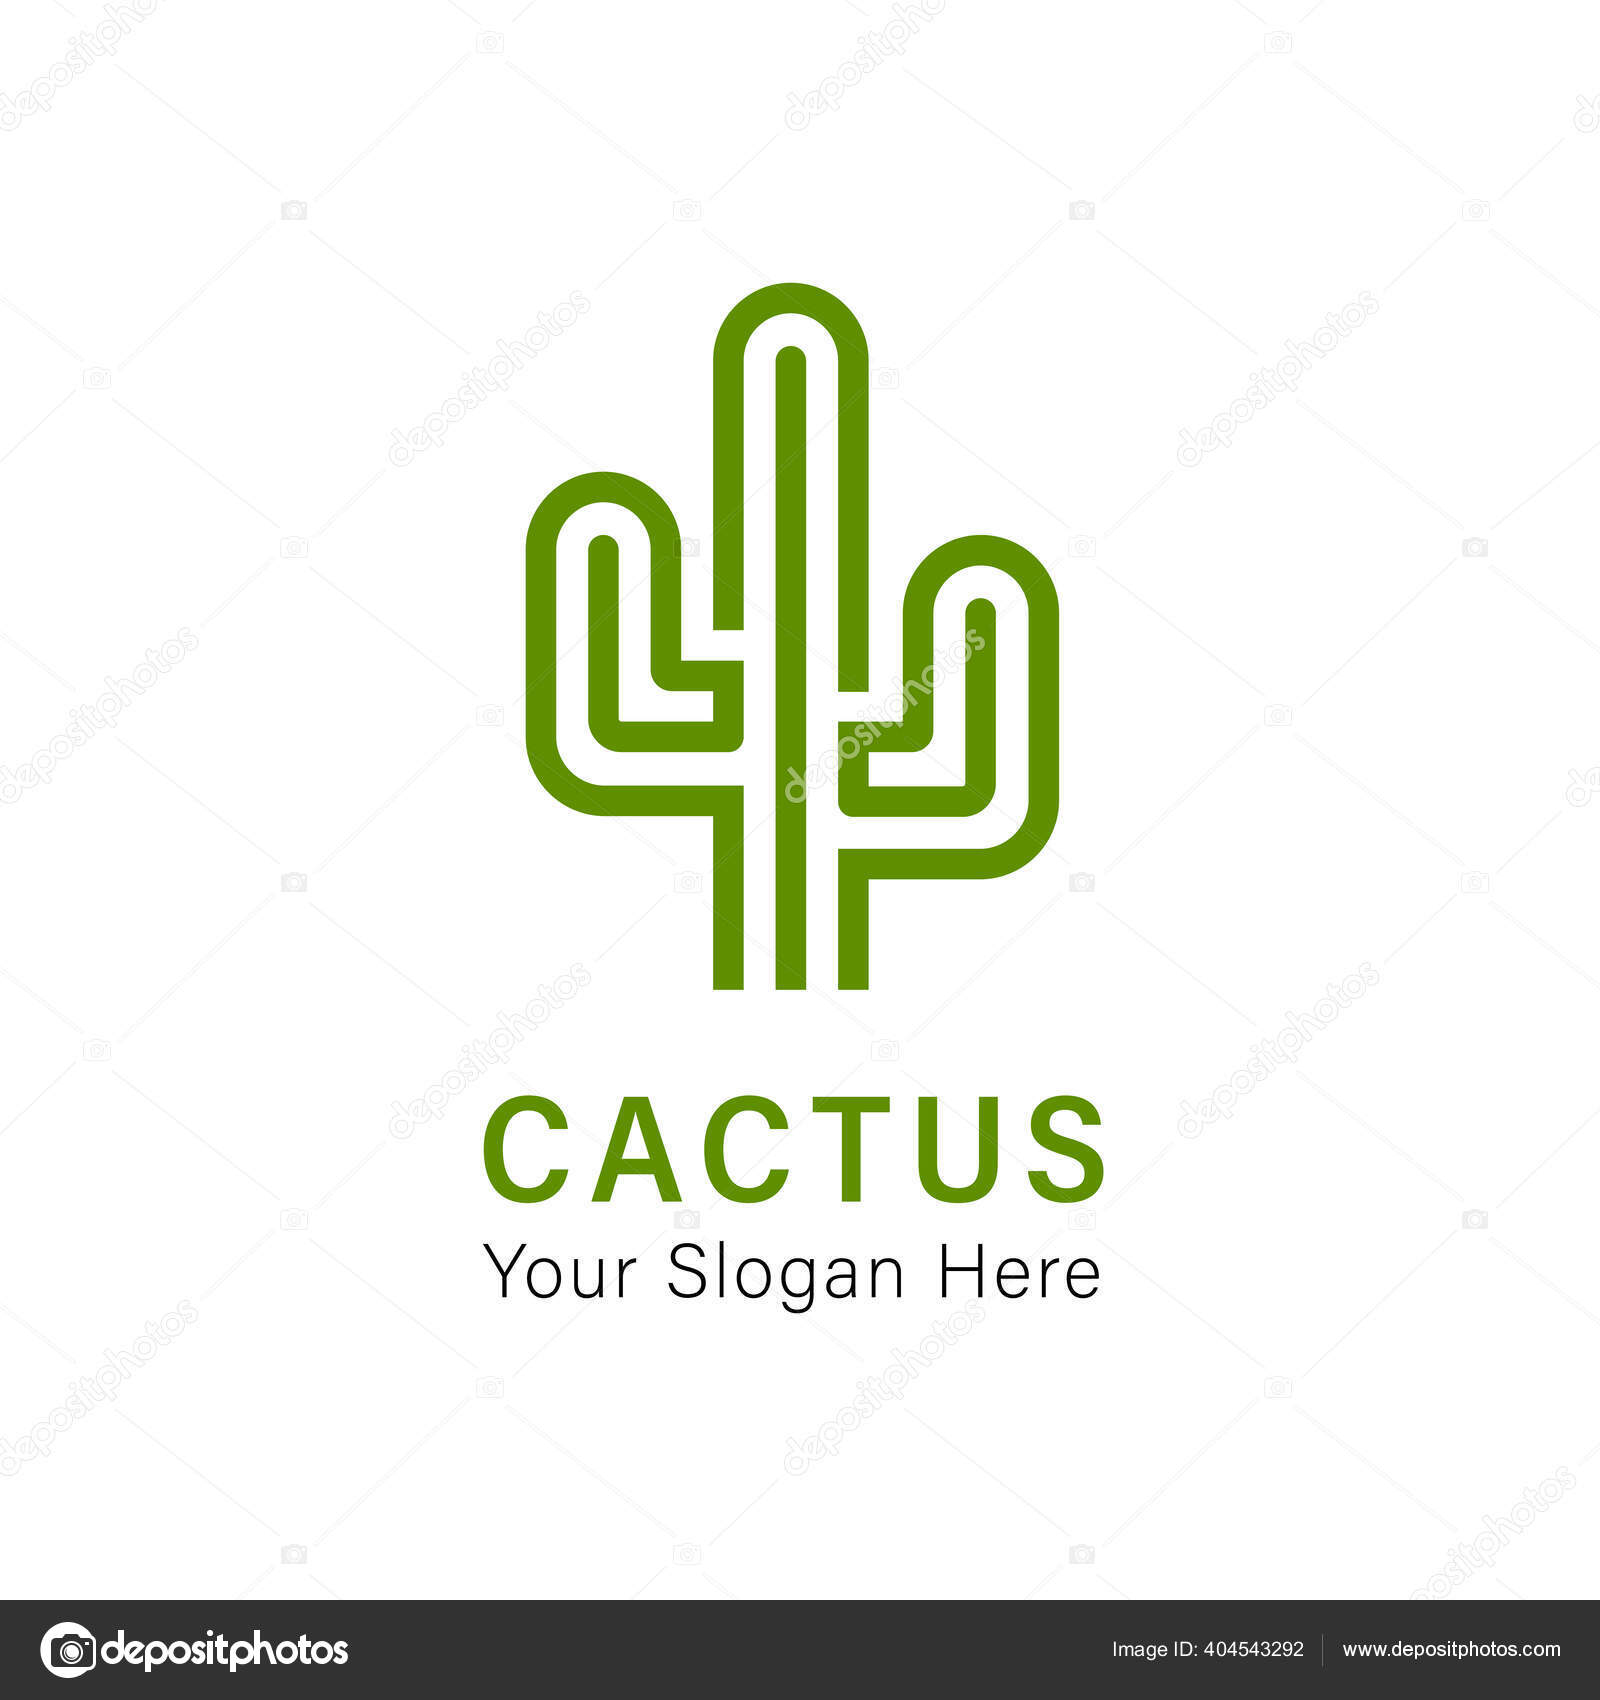 Cactus Desenho Do Estilo De Rabisco De Vetor Simples Ilustração Linear  Desenho Em Branco Ilustração Stock - Ilustração de objeto, cactos: 170803097